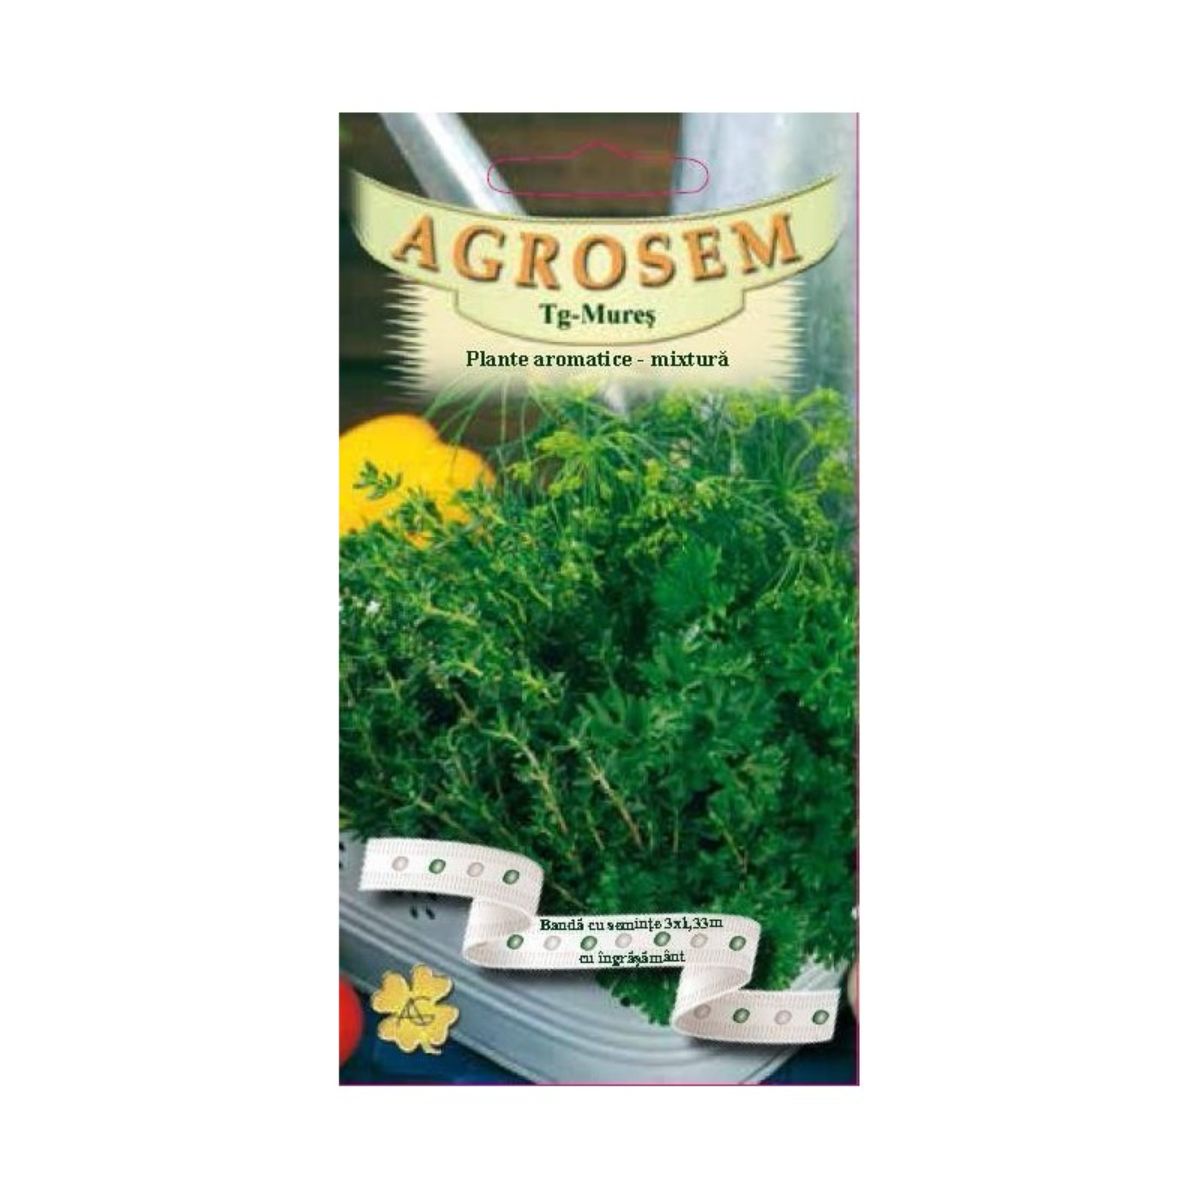 Seminte de legume HOBBY - Seminţe pe bandă MIX: Plante aromatice mix cimbru, mărar,pătrunjel foarte neted AGROSEM 3 benzi, hectarul.ro